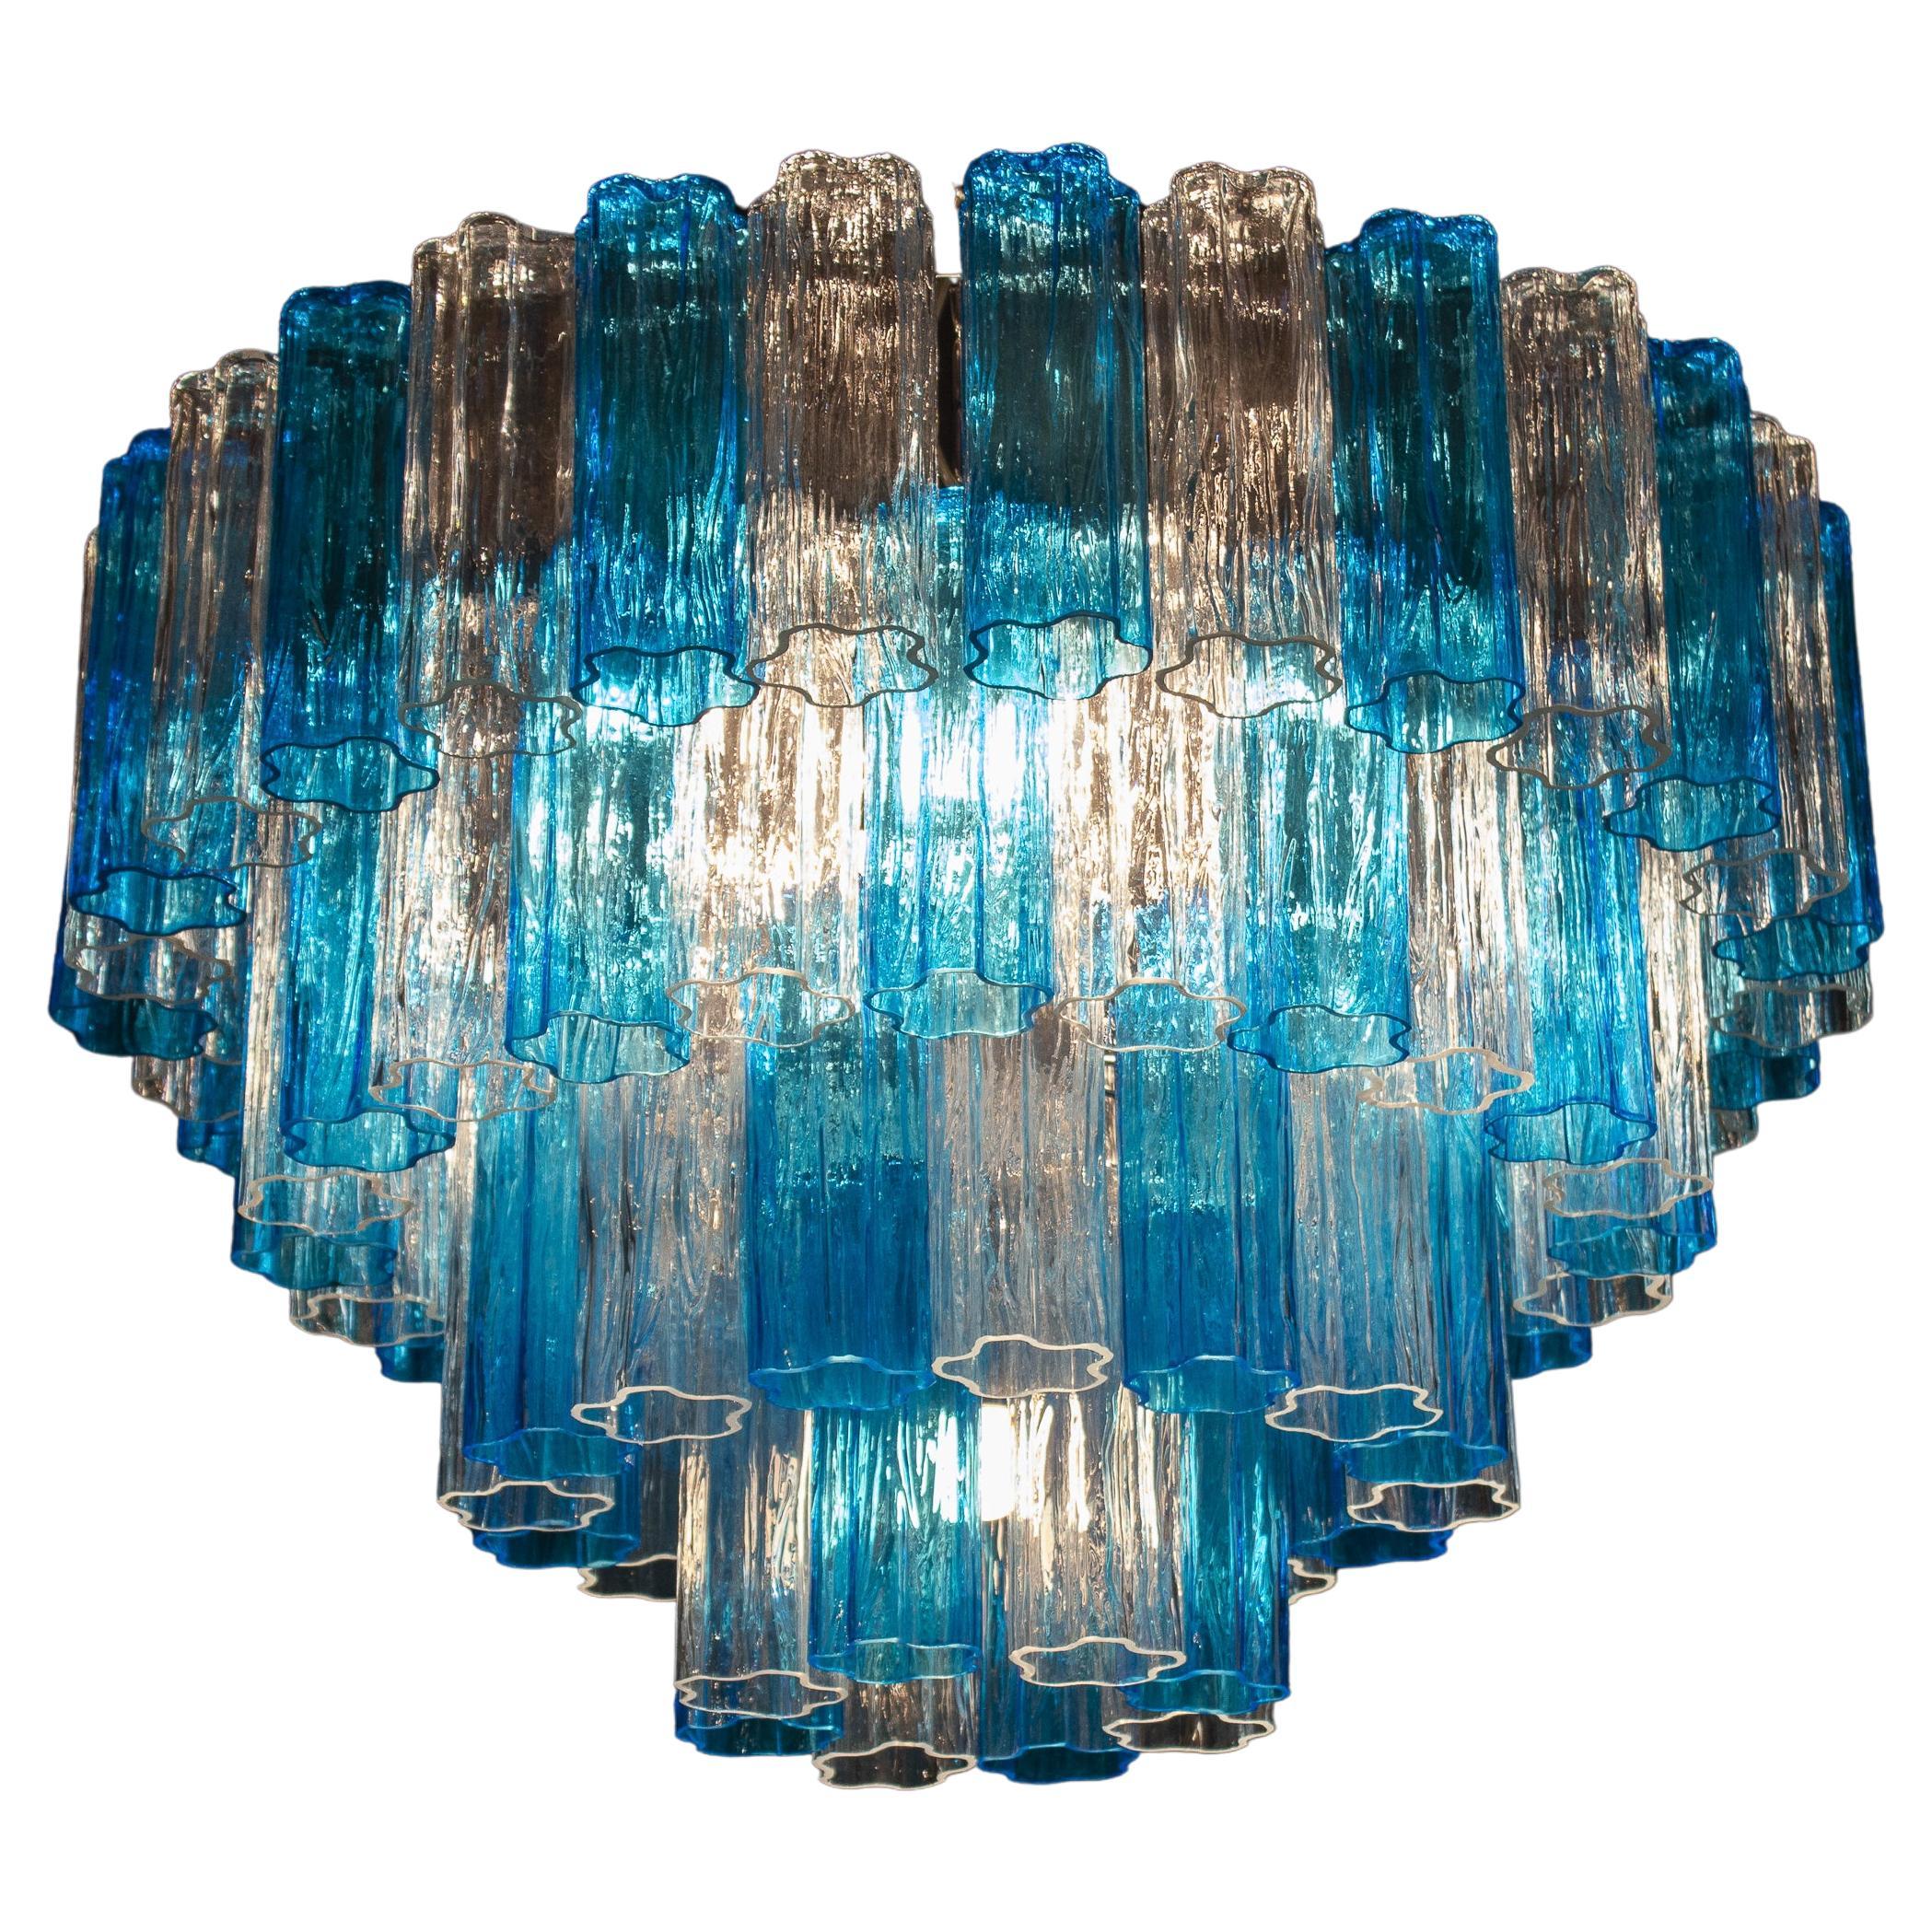 Plafonnier Tronchi en verre de Murano bleu turquoise et couleur glace